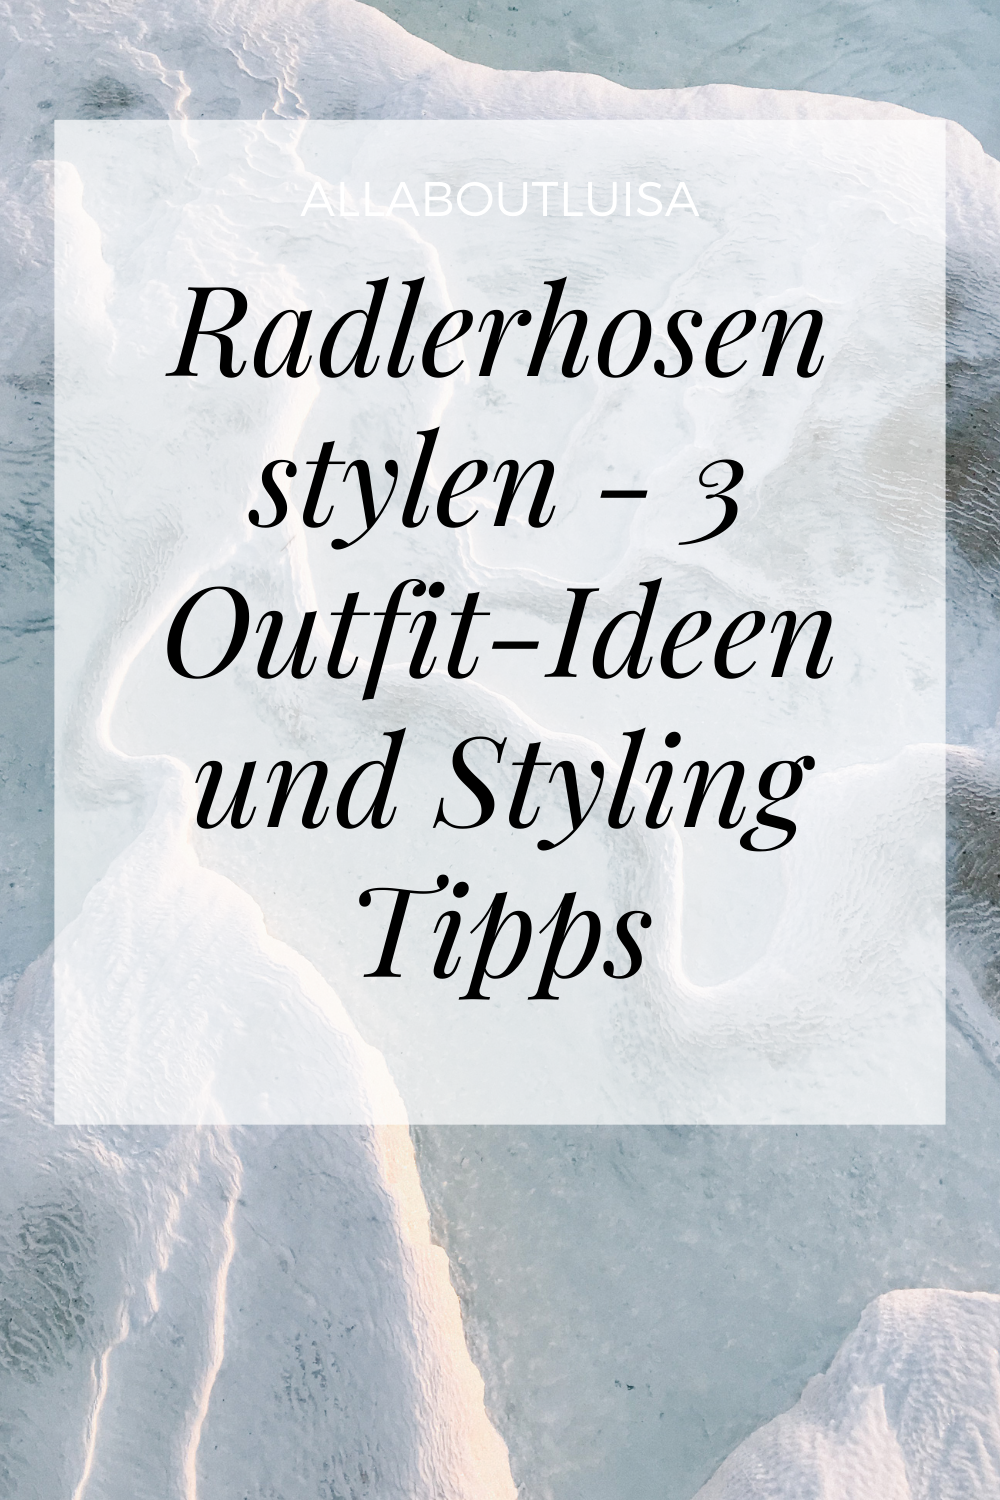 Radlerhosen stylen – 3 Outfit-Ideen und Styling Tipps